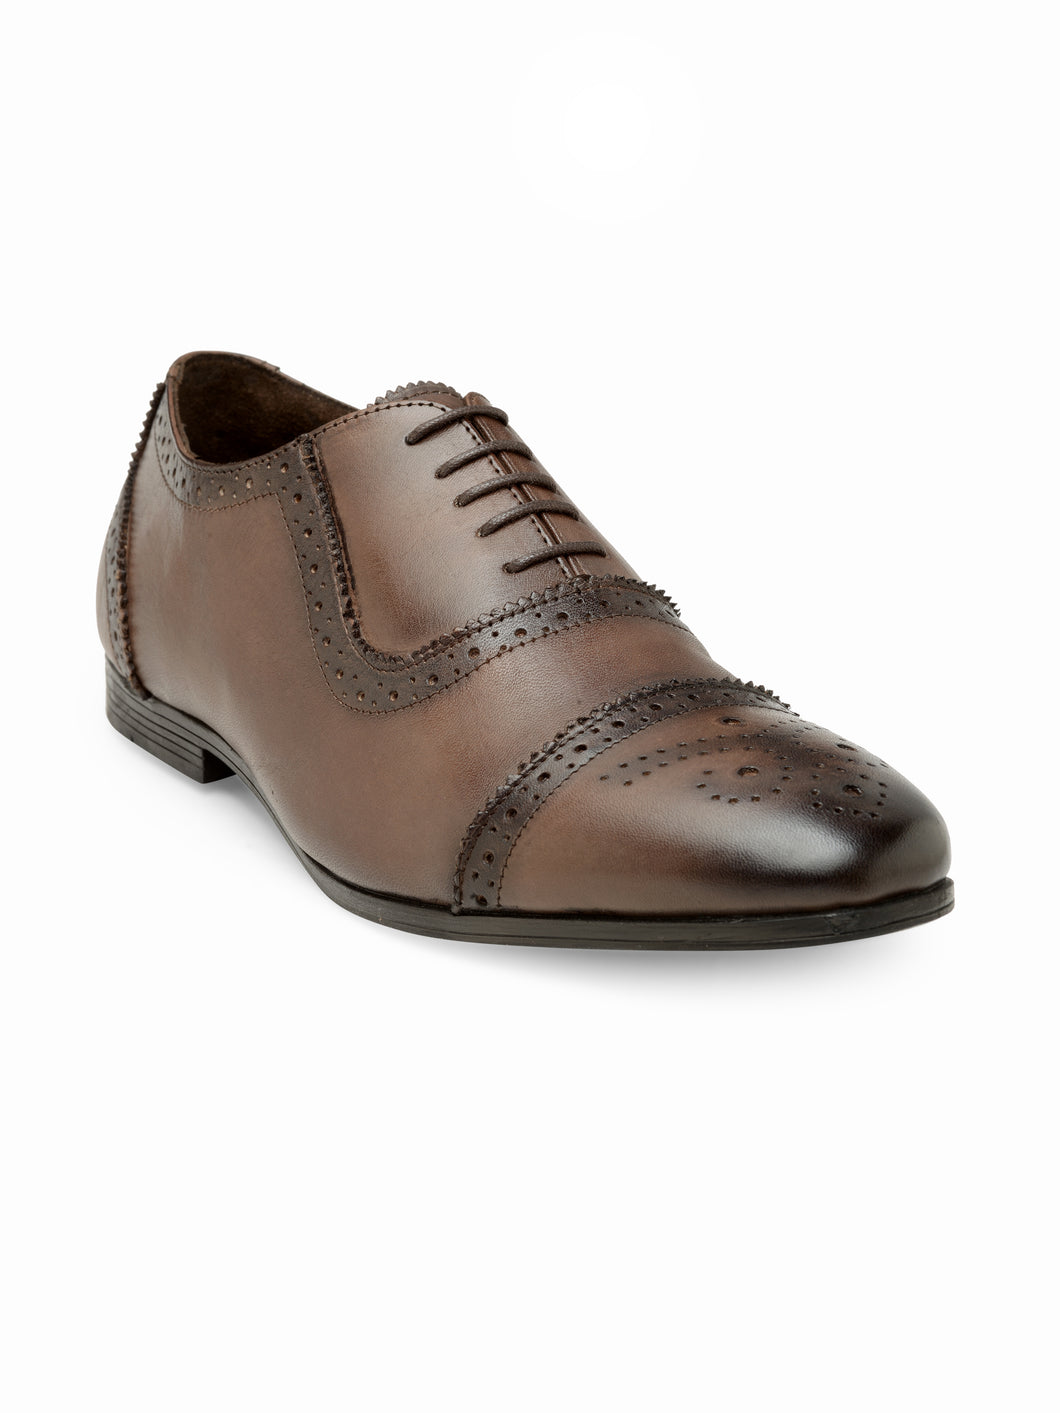 Teakwood Genuine leather Brown Men Brown Brogues Shoes